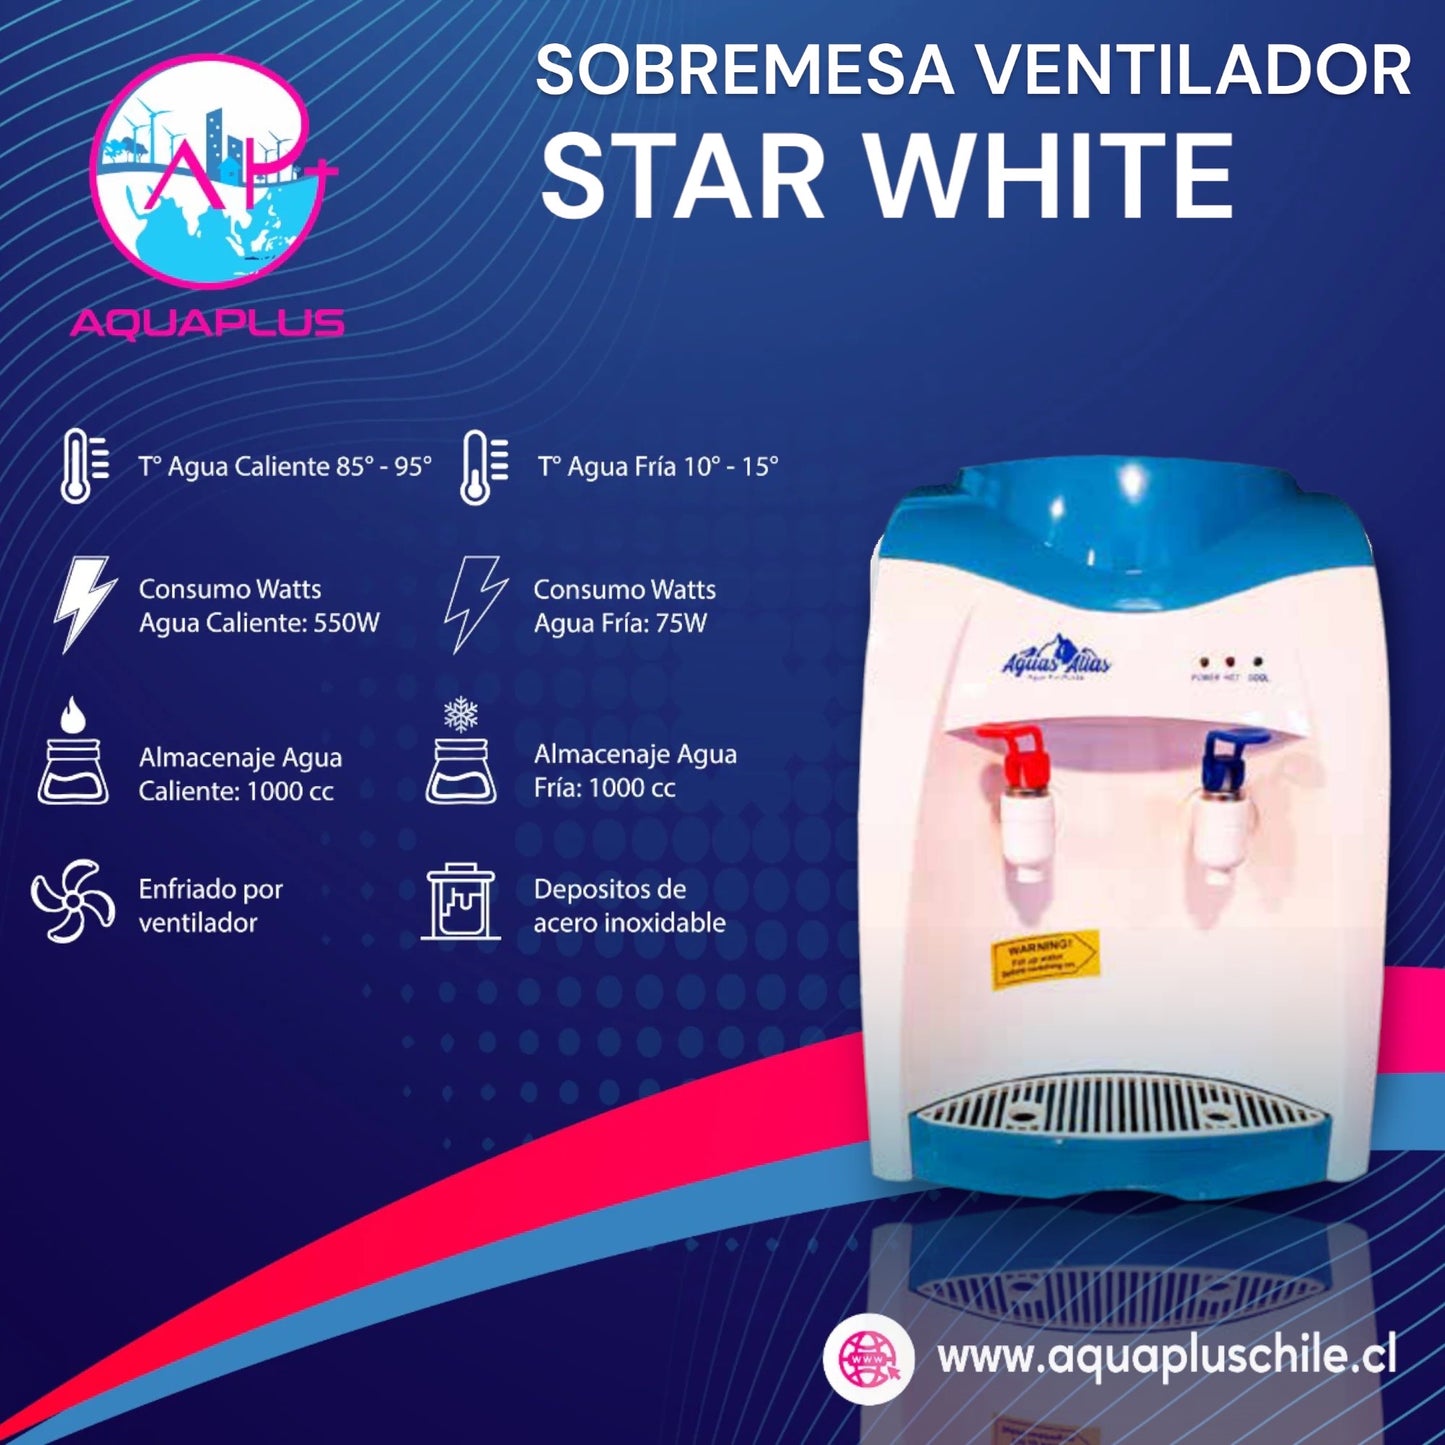 SOBREMESA VENTILADOR STAR WHITE + 2 BIDONES (incluye envases retonable)